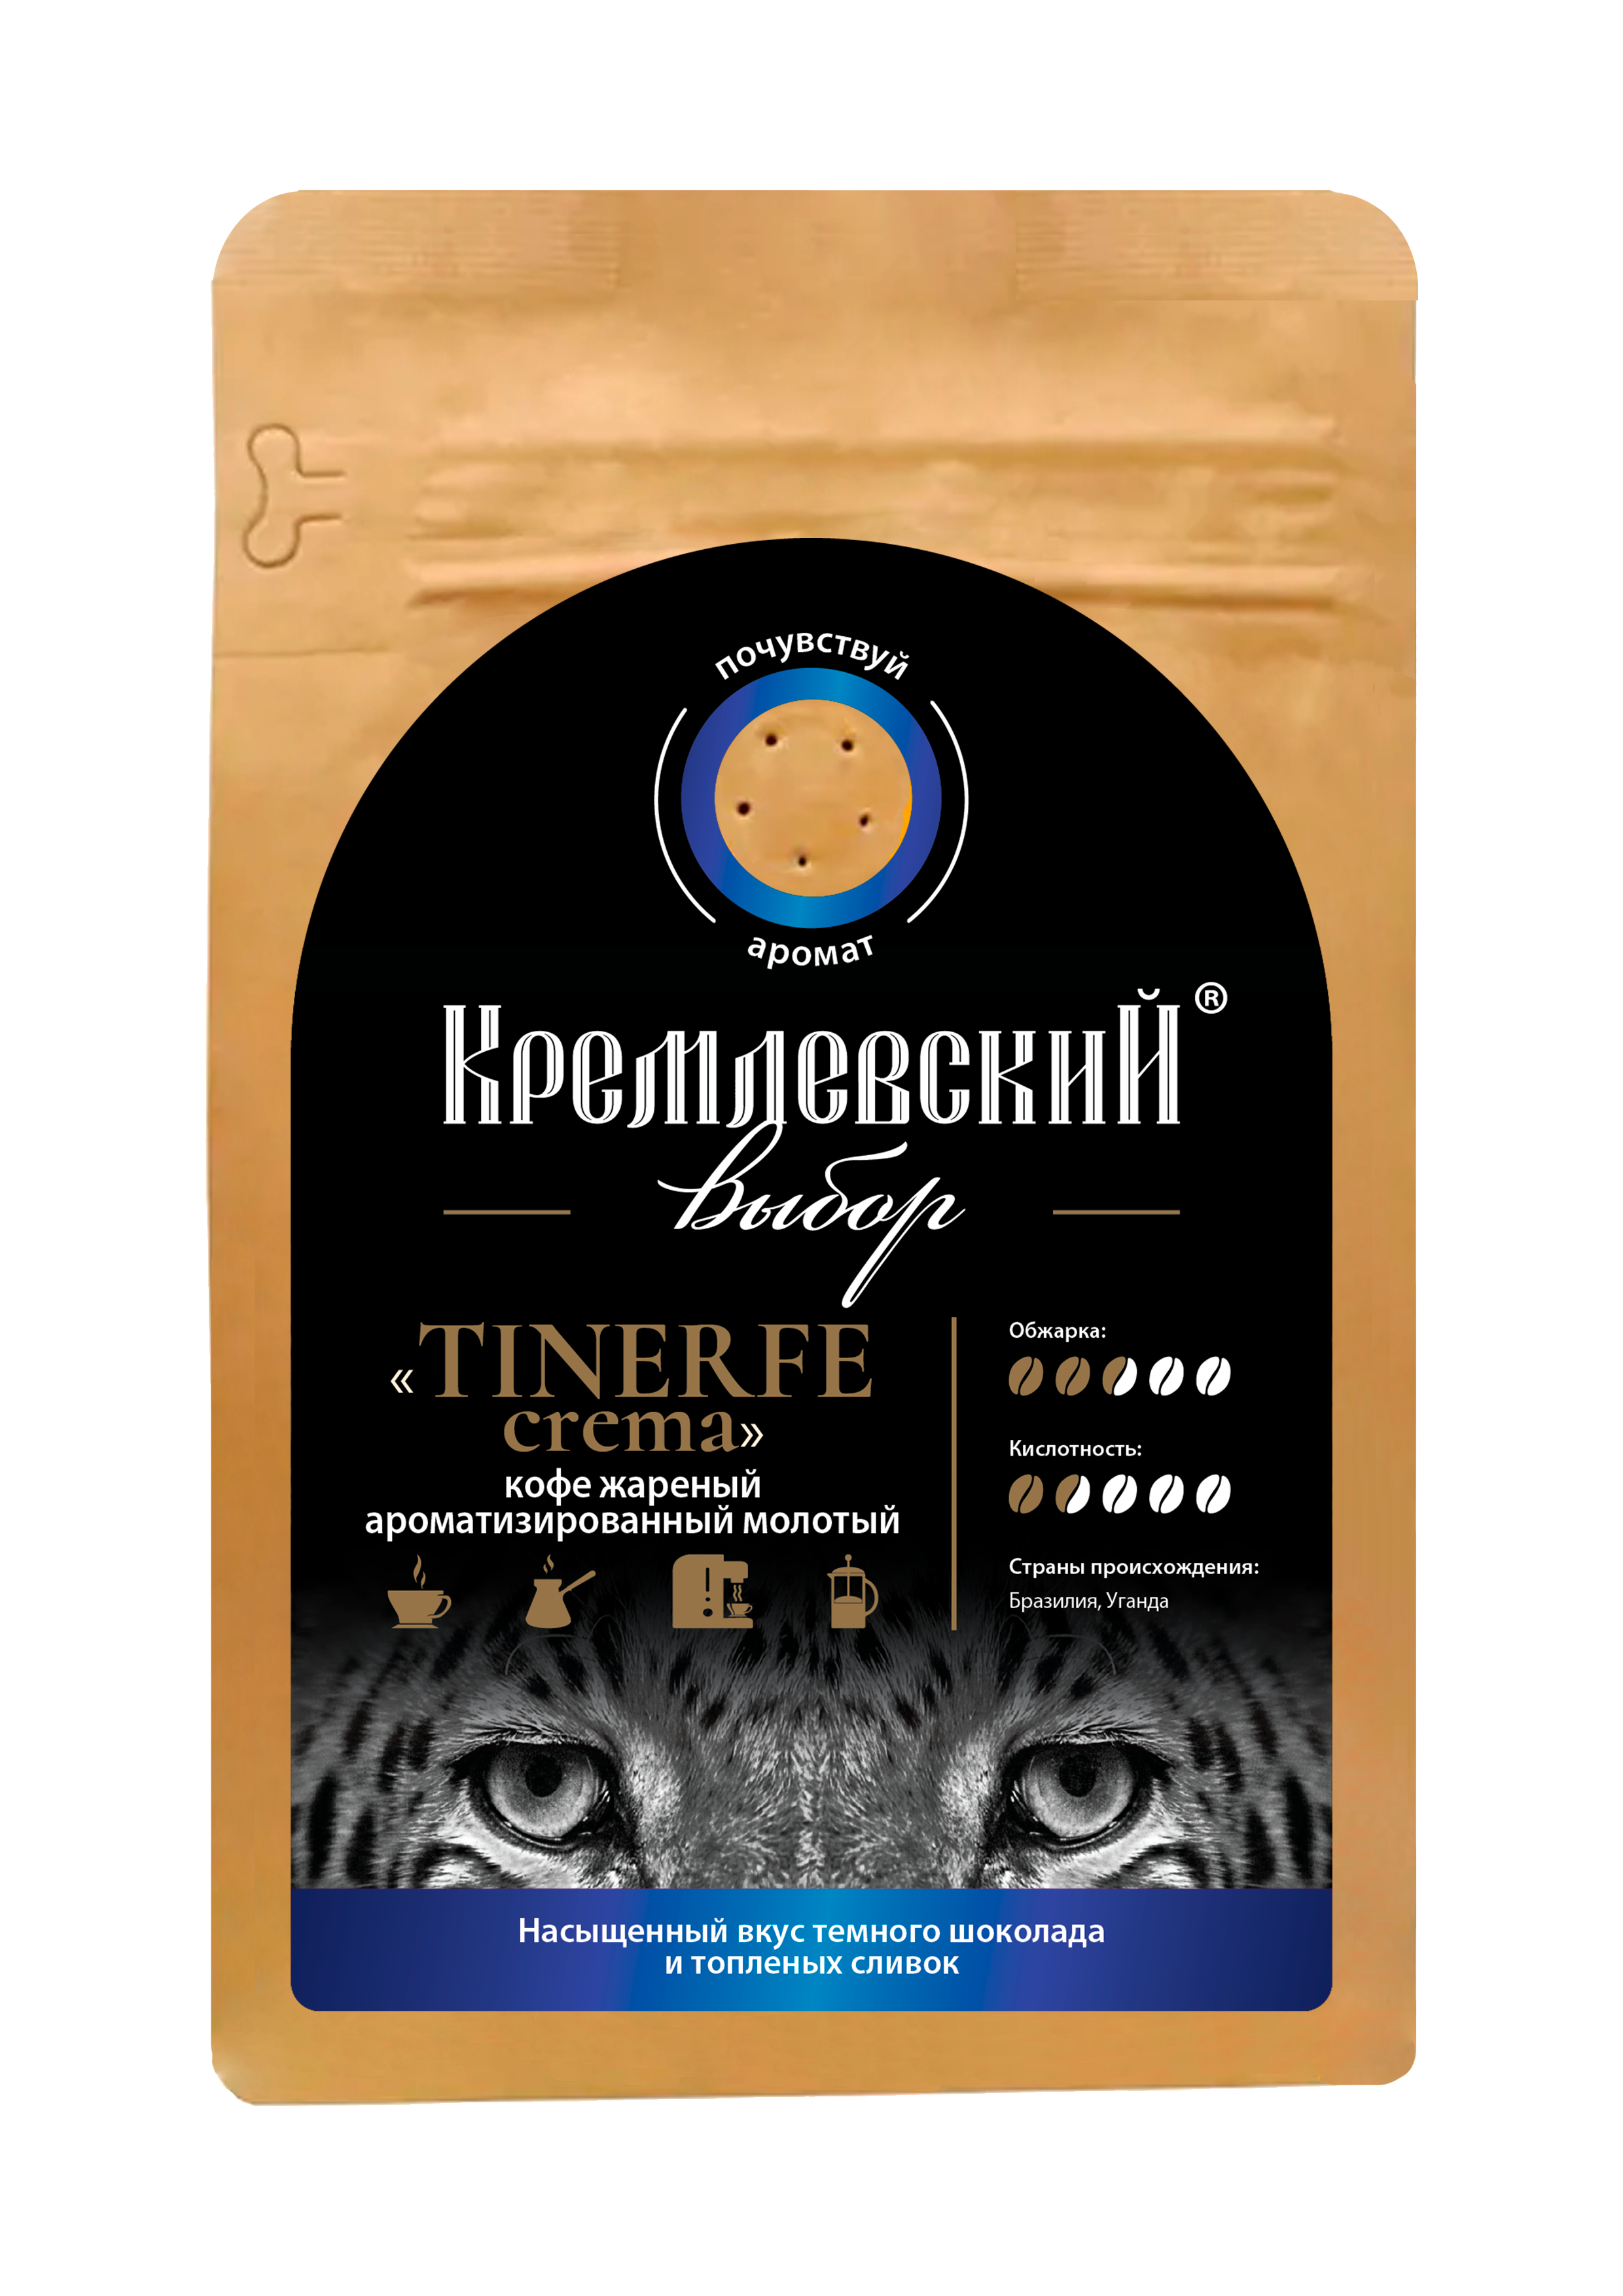 Кофе жареный ароматизированный молотый TINERFE crema Кремлевский выбор, 250 г